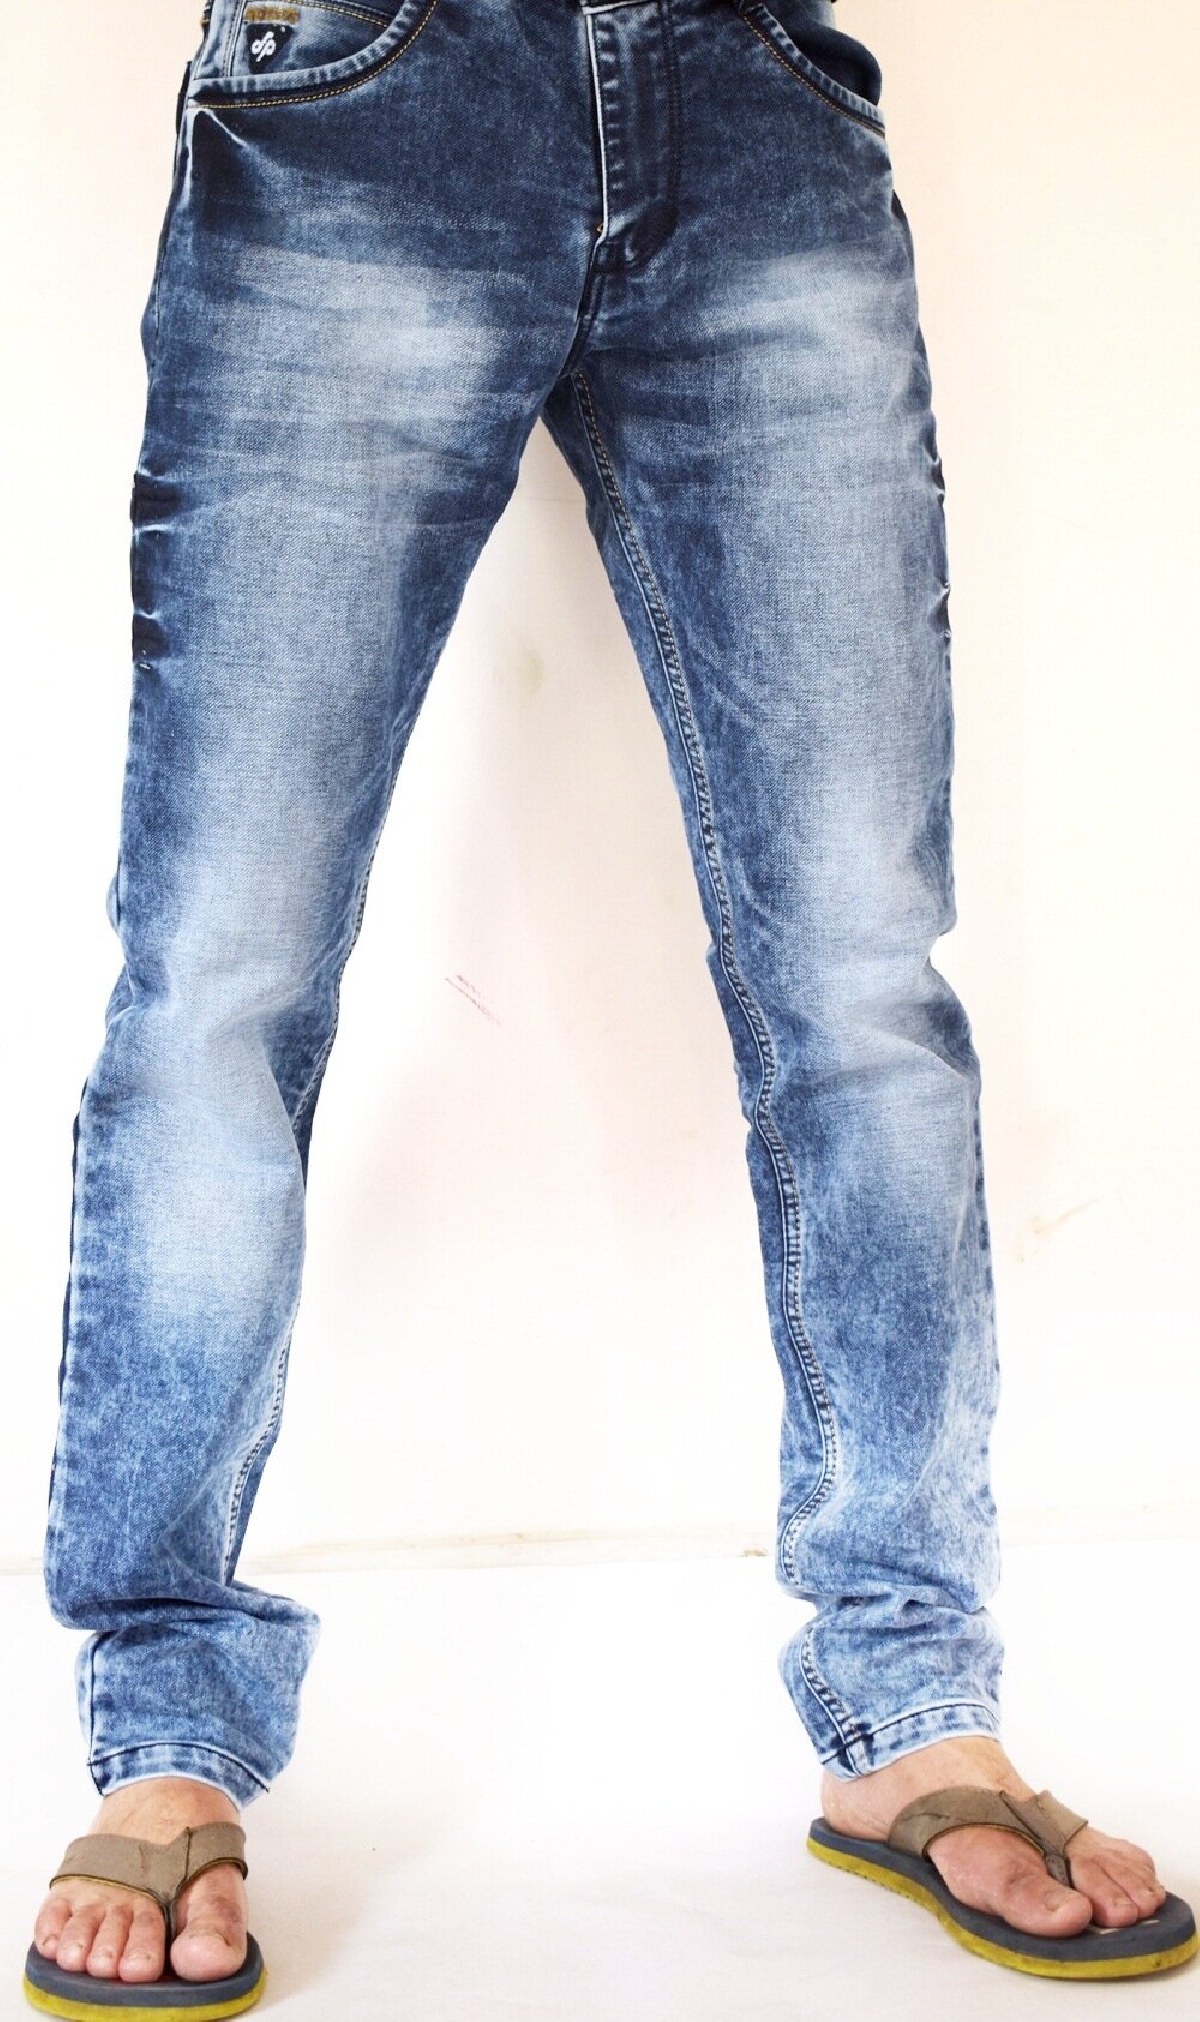 original sparky jeans